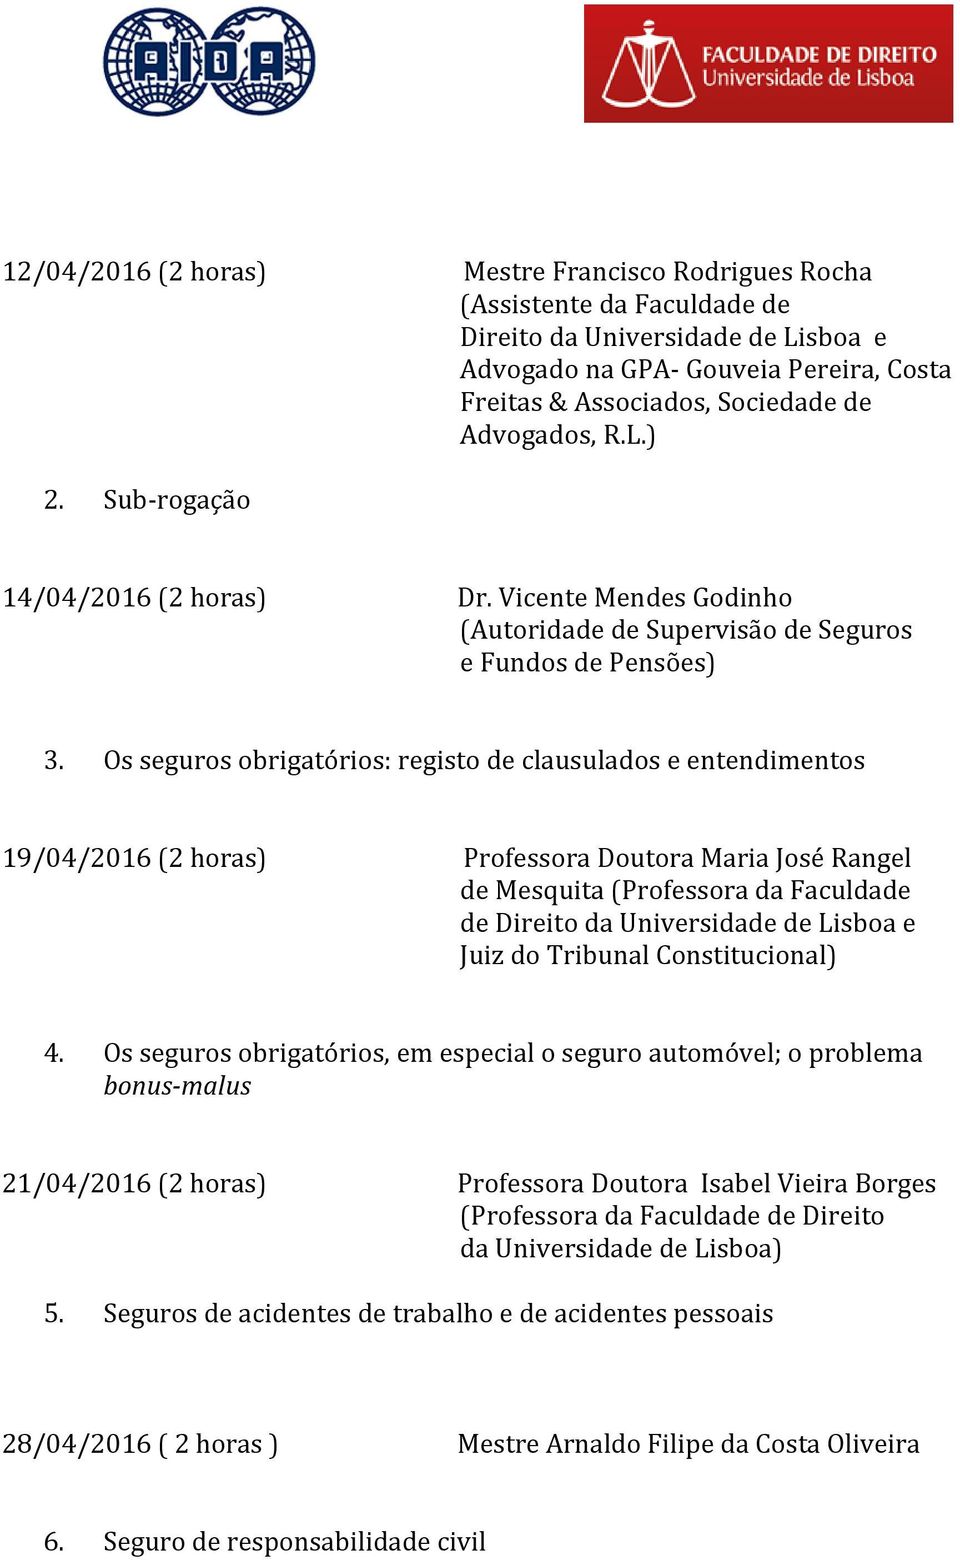 Os seguros obrigatórios: registo de clausulados e entendimentos 19/04/2016 (2 horas) Professora Doutora Maria José Rangel de Mesquita (Professora da Faculdade de Direito da Universidade de Lisboa e